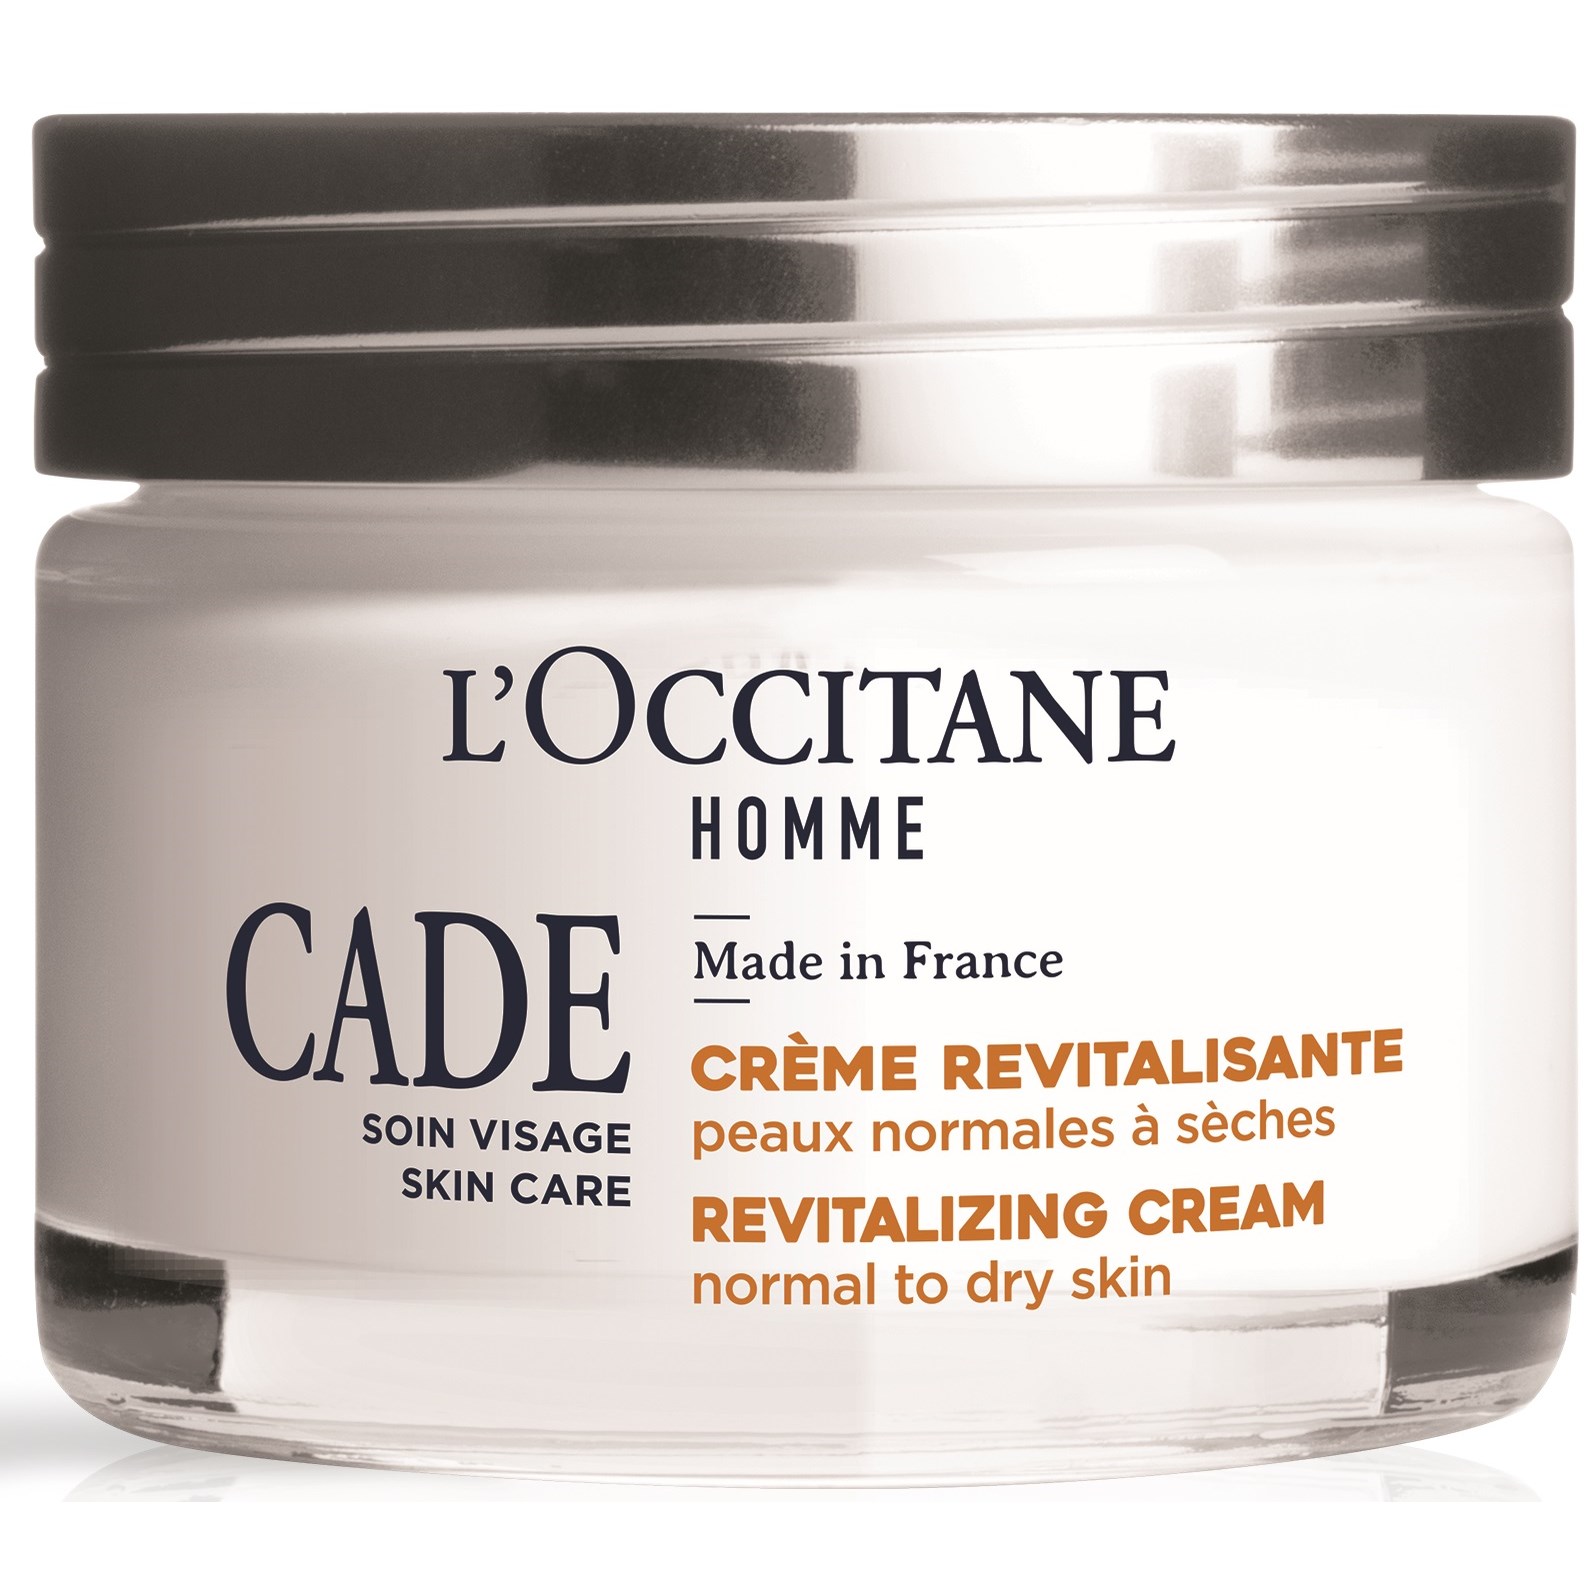 LOccitane Cade Revitalizing Cream 50 ml